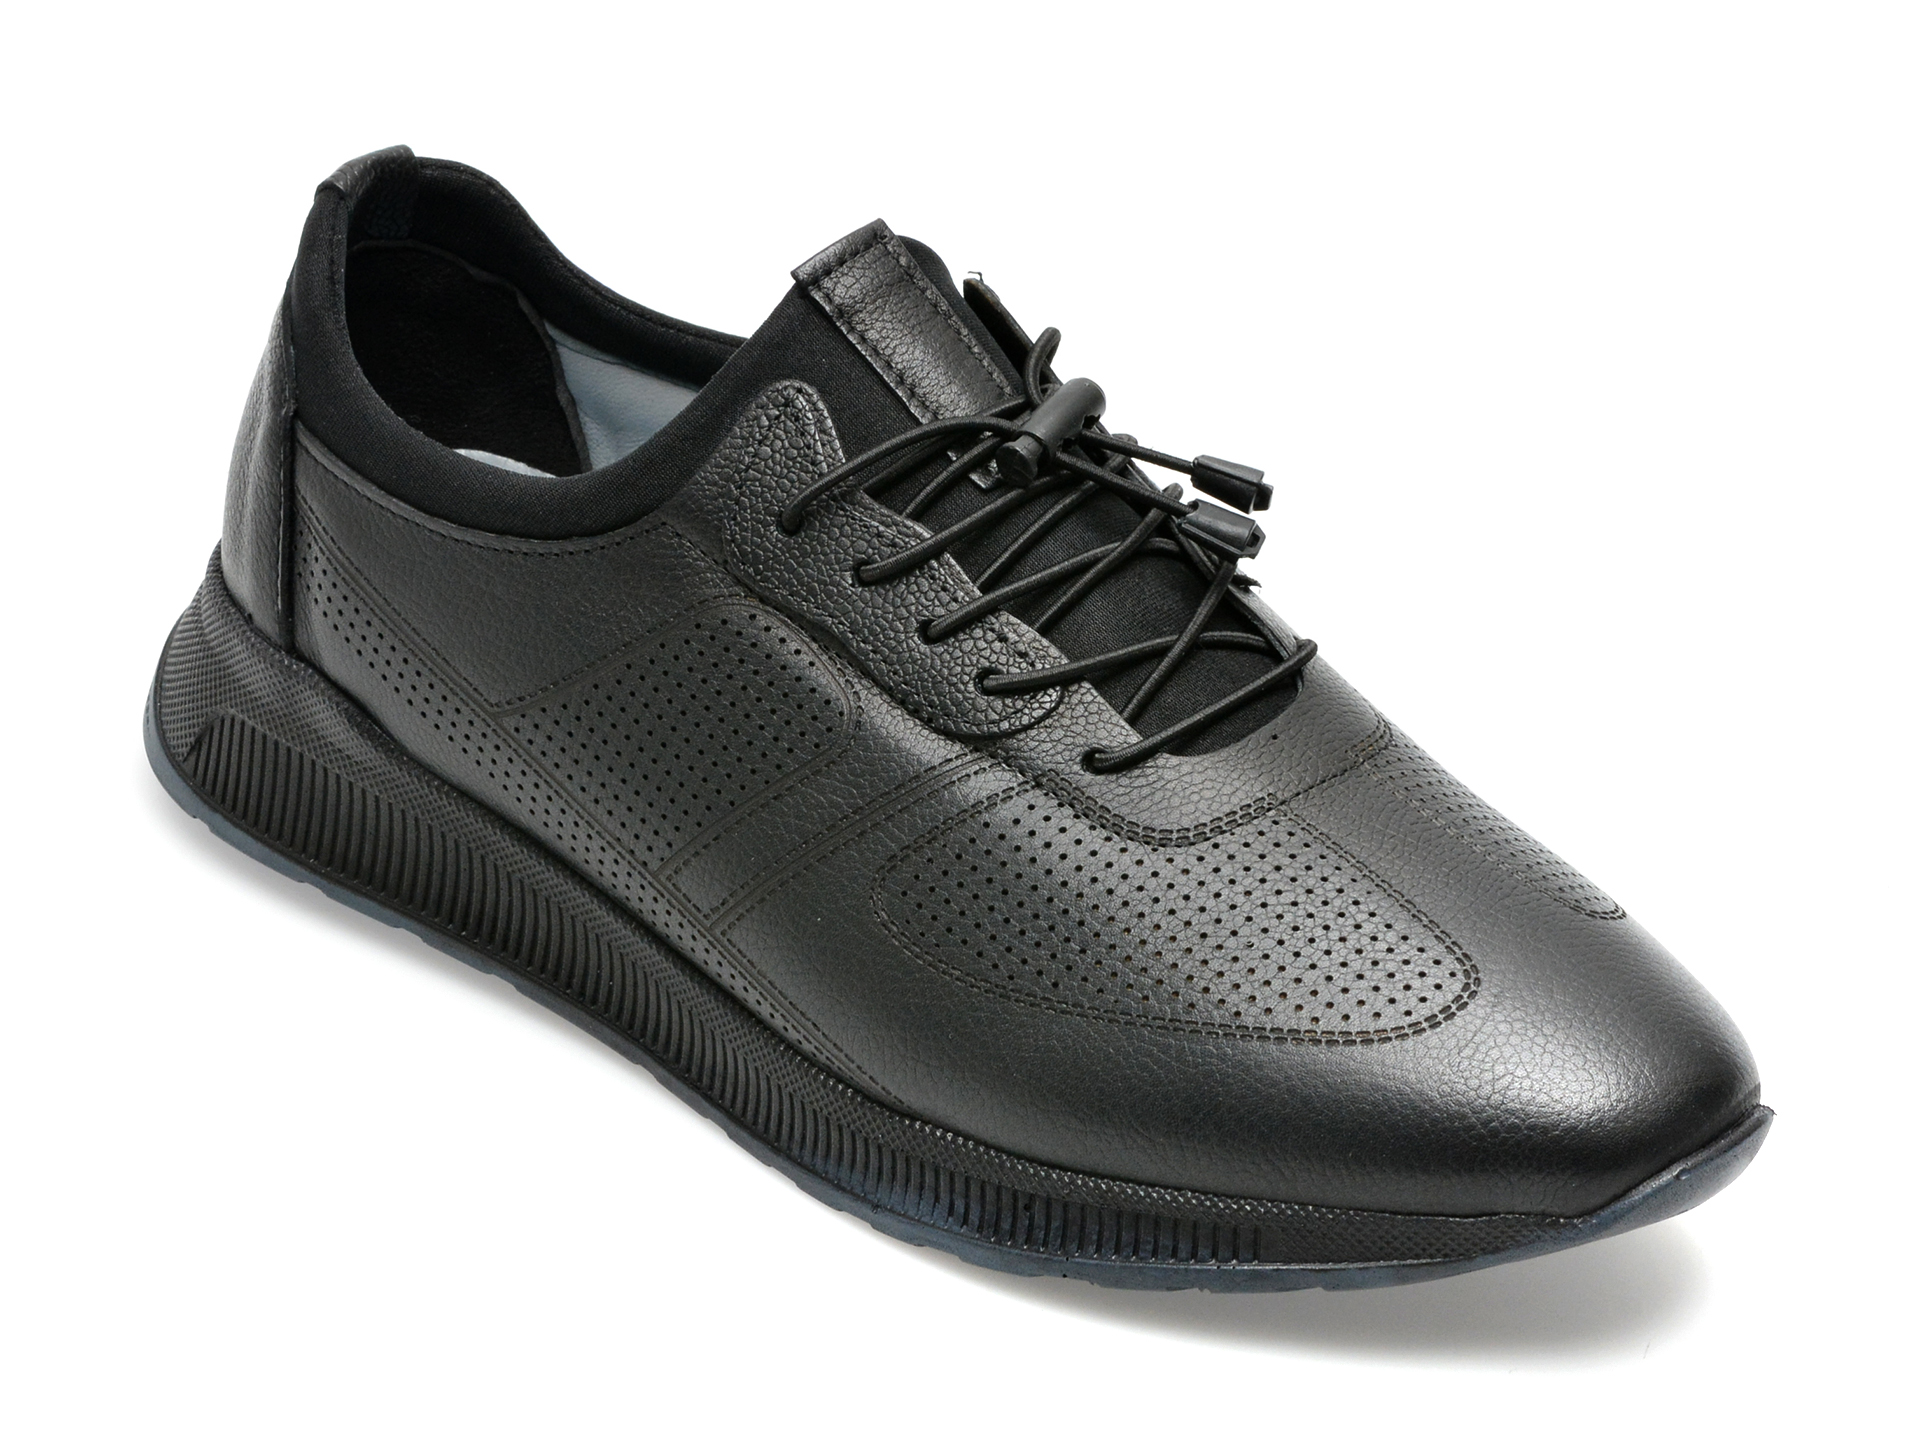 Pantofi AXXELLL negri, OY504A, din piele naturala